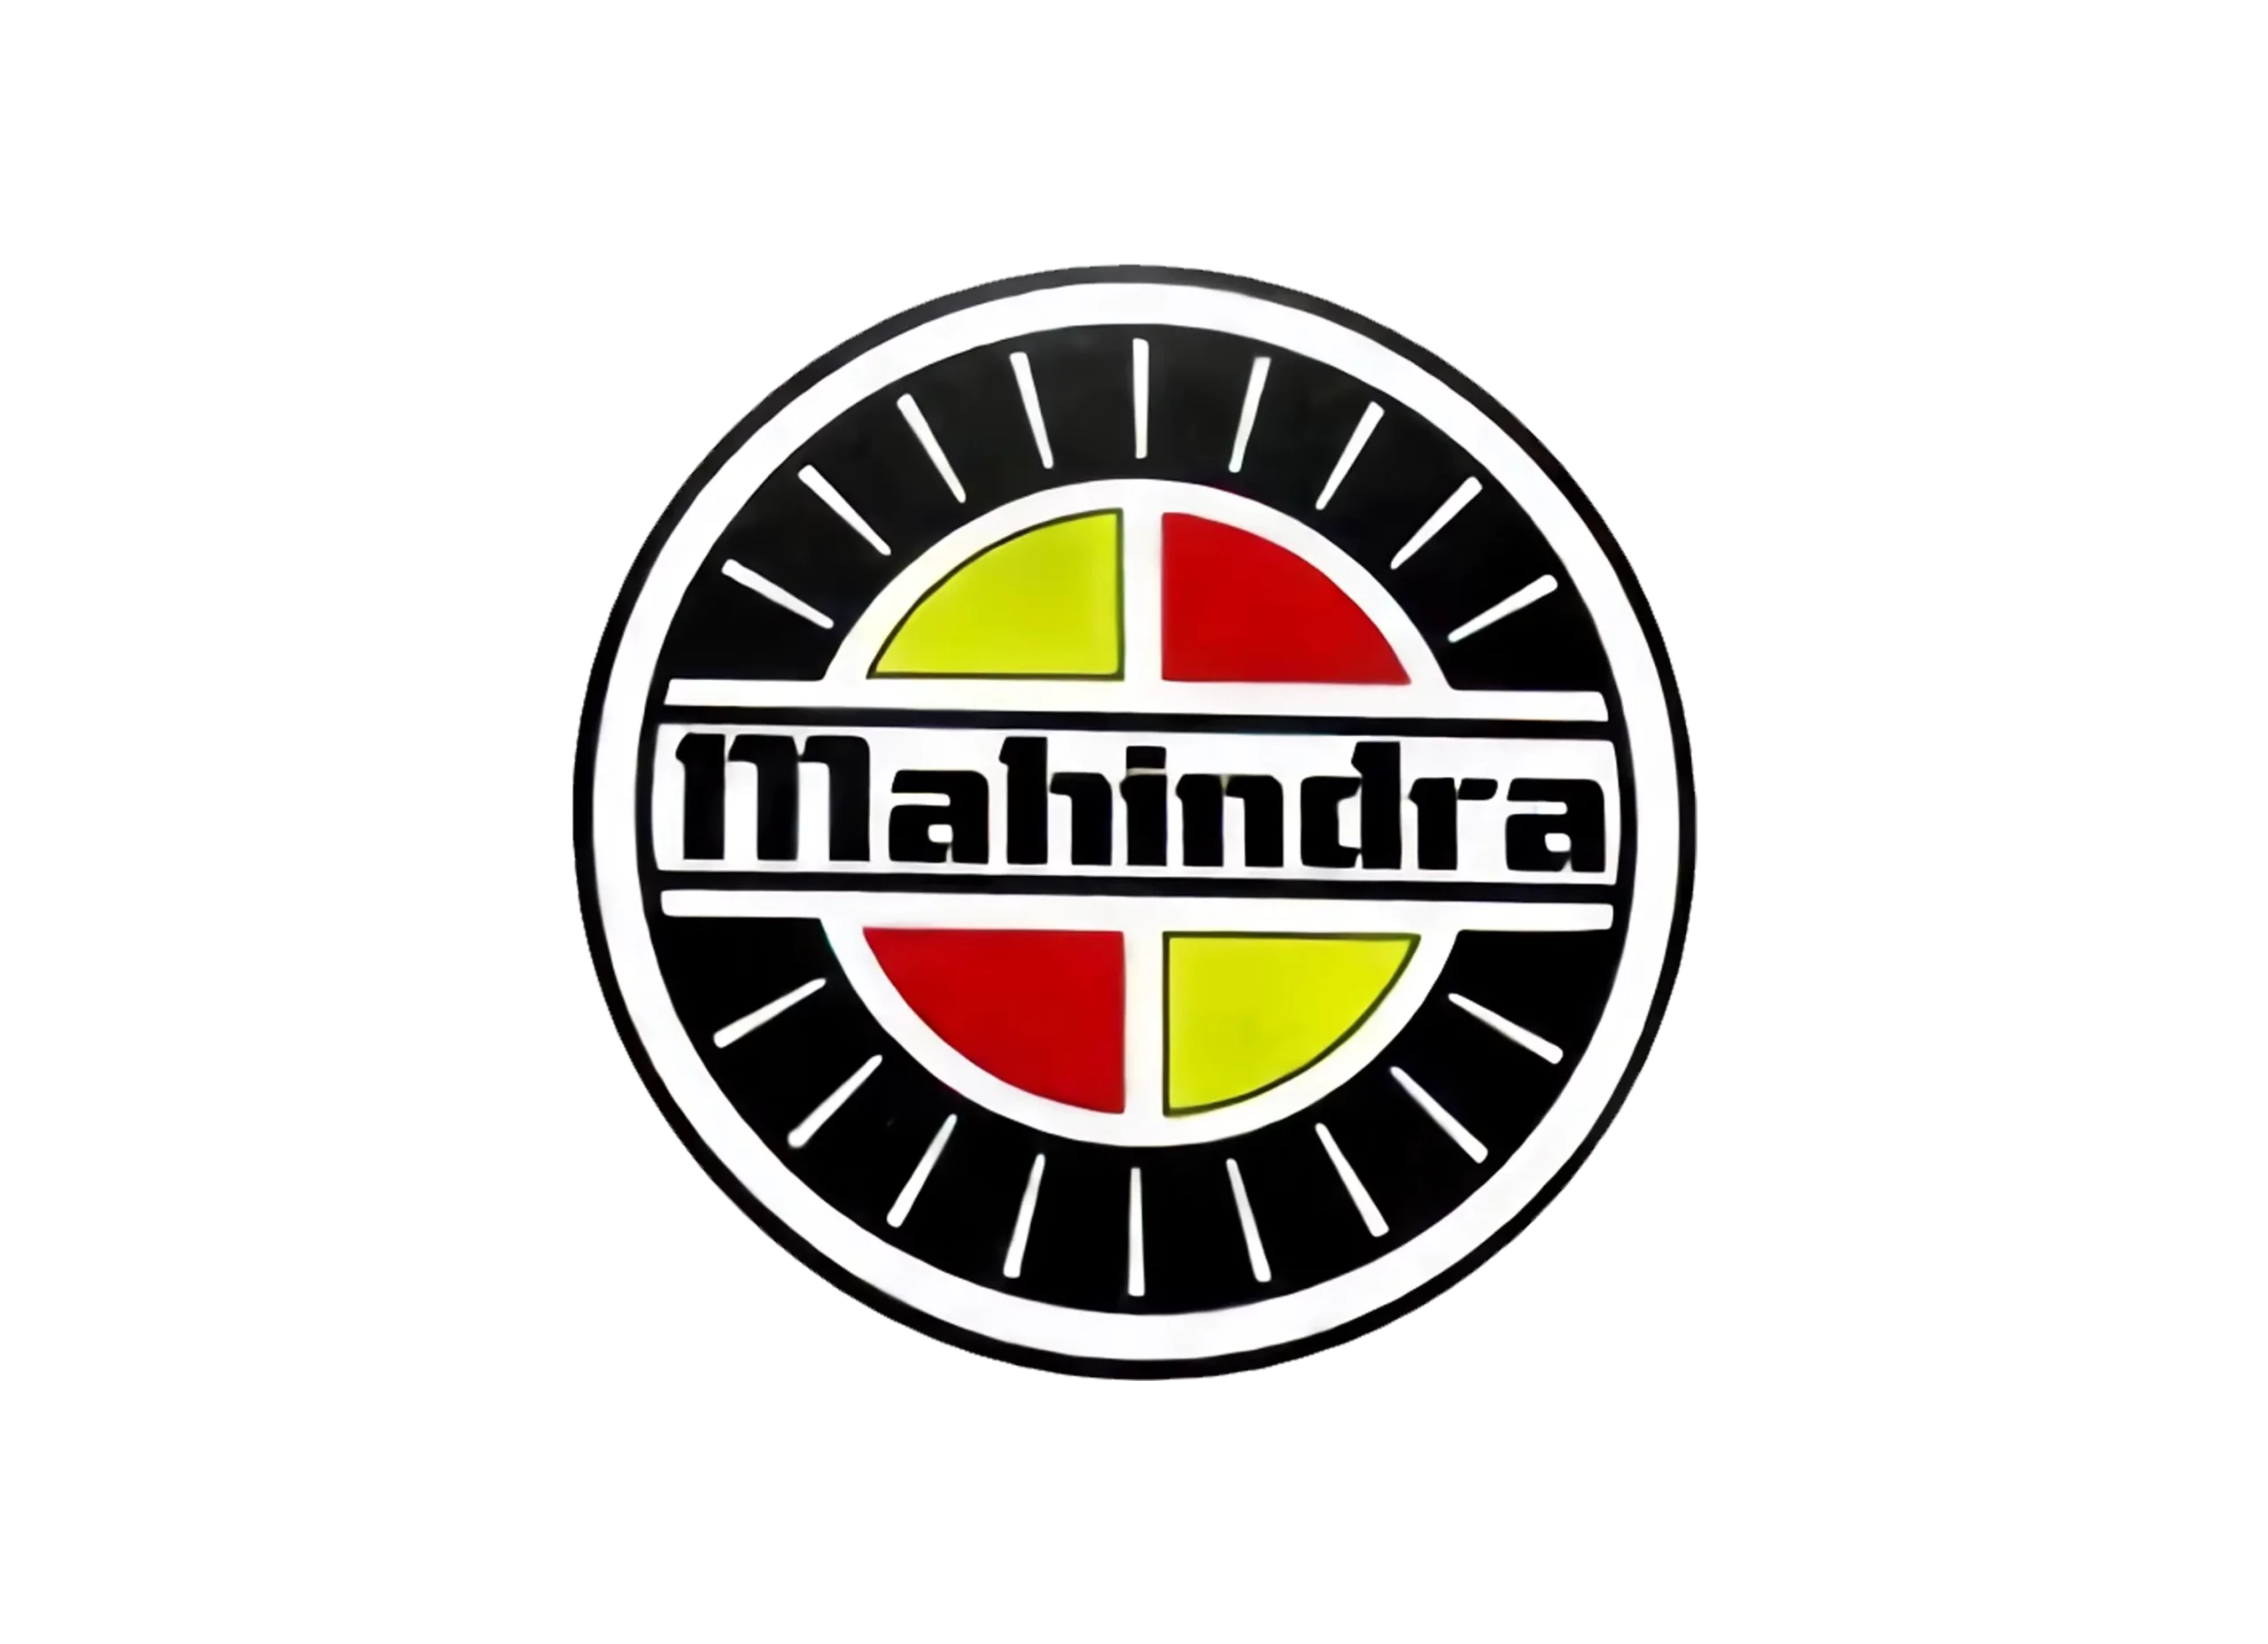 Mahindra logo 1948-2000